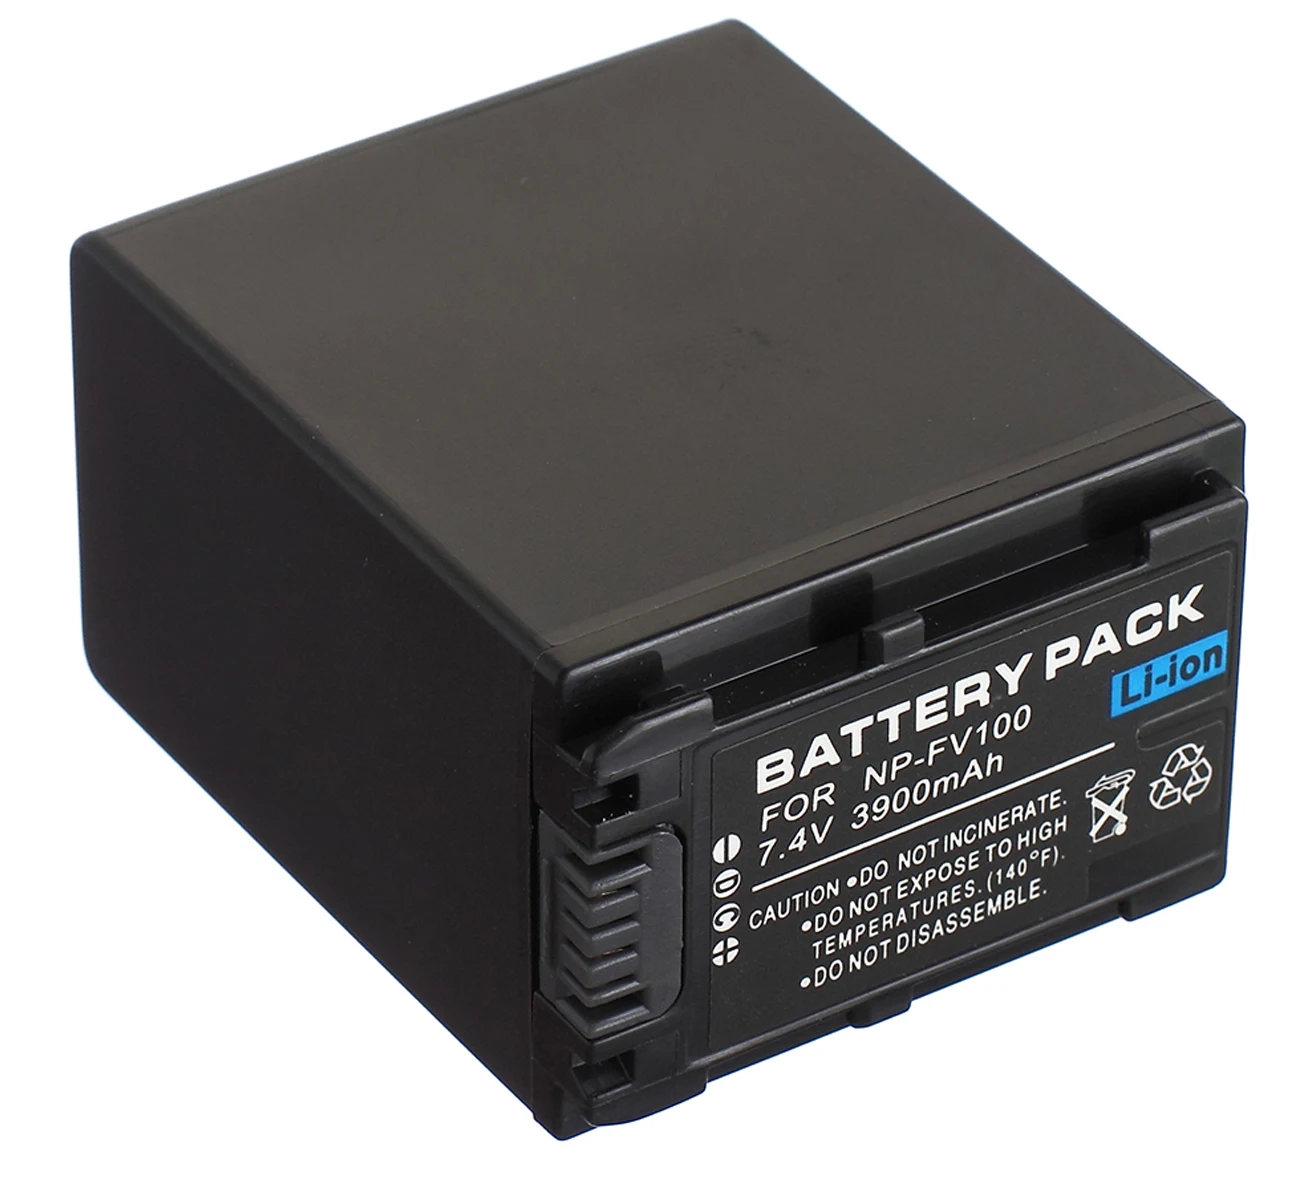 

NP-FV100 Battery Pack for Sony HDR-PJ200, HDR-PJ210, HDR-PJ220, HDR-PJ230, HDR-PJ260V Handycam Camcorder